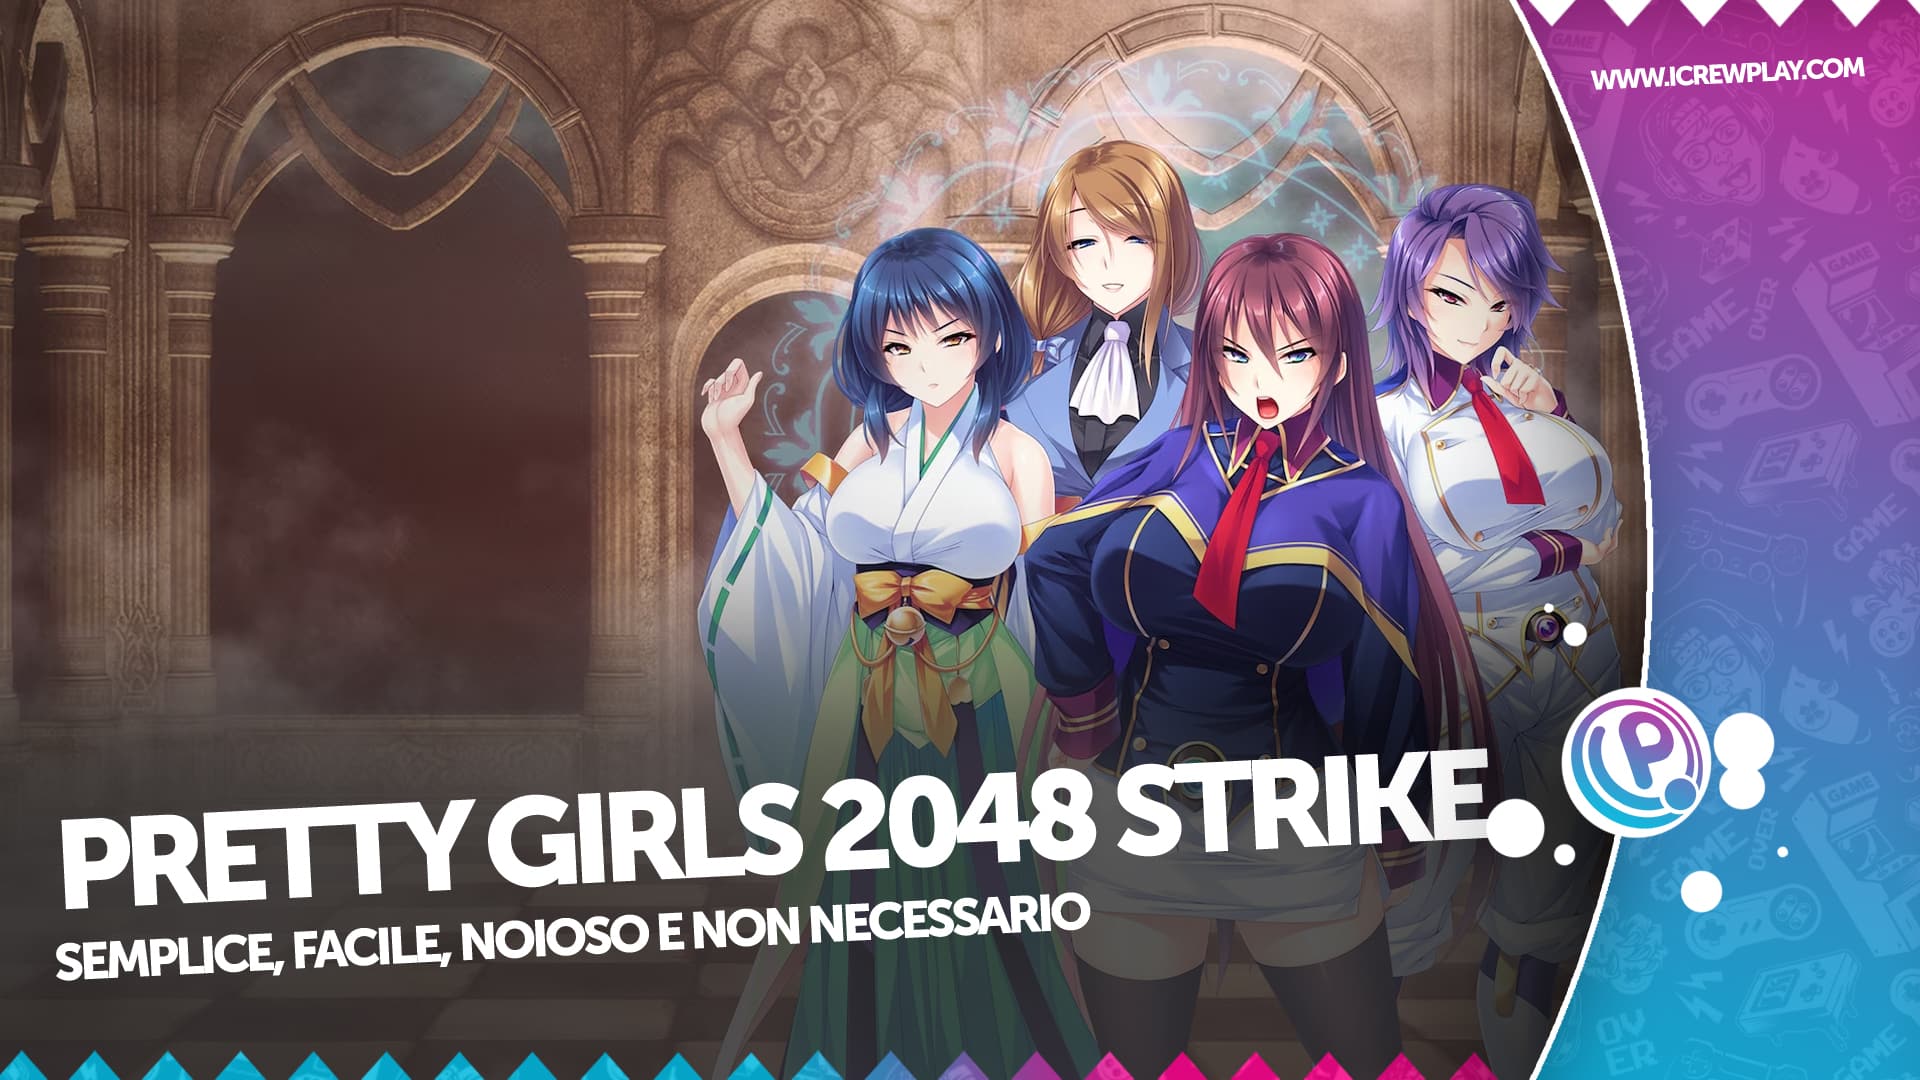 Pretty Girls 2048 Strike, ma qualcuno ha mai voluto un gioco simile? 8